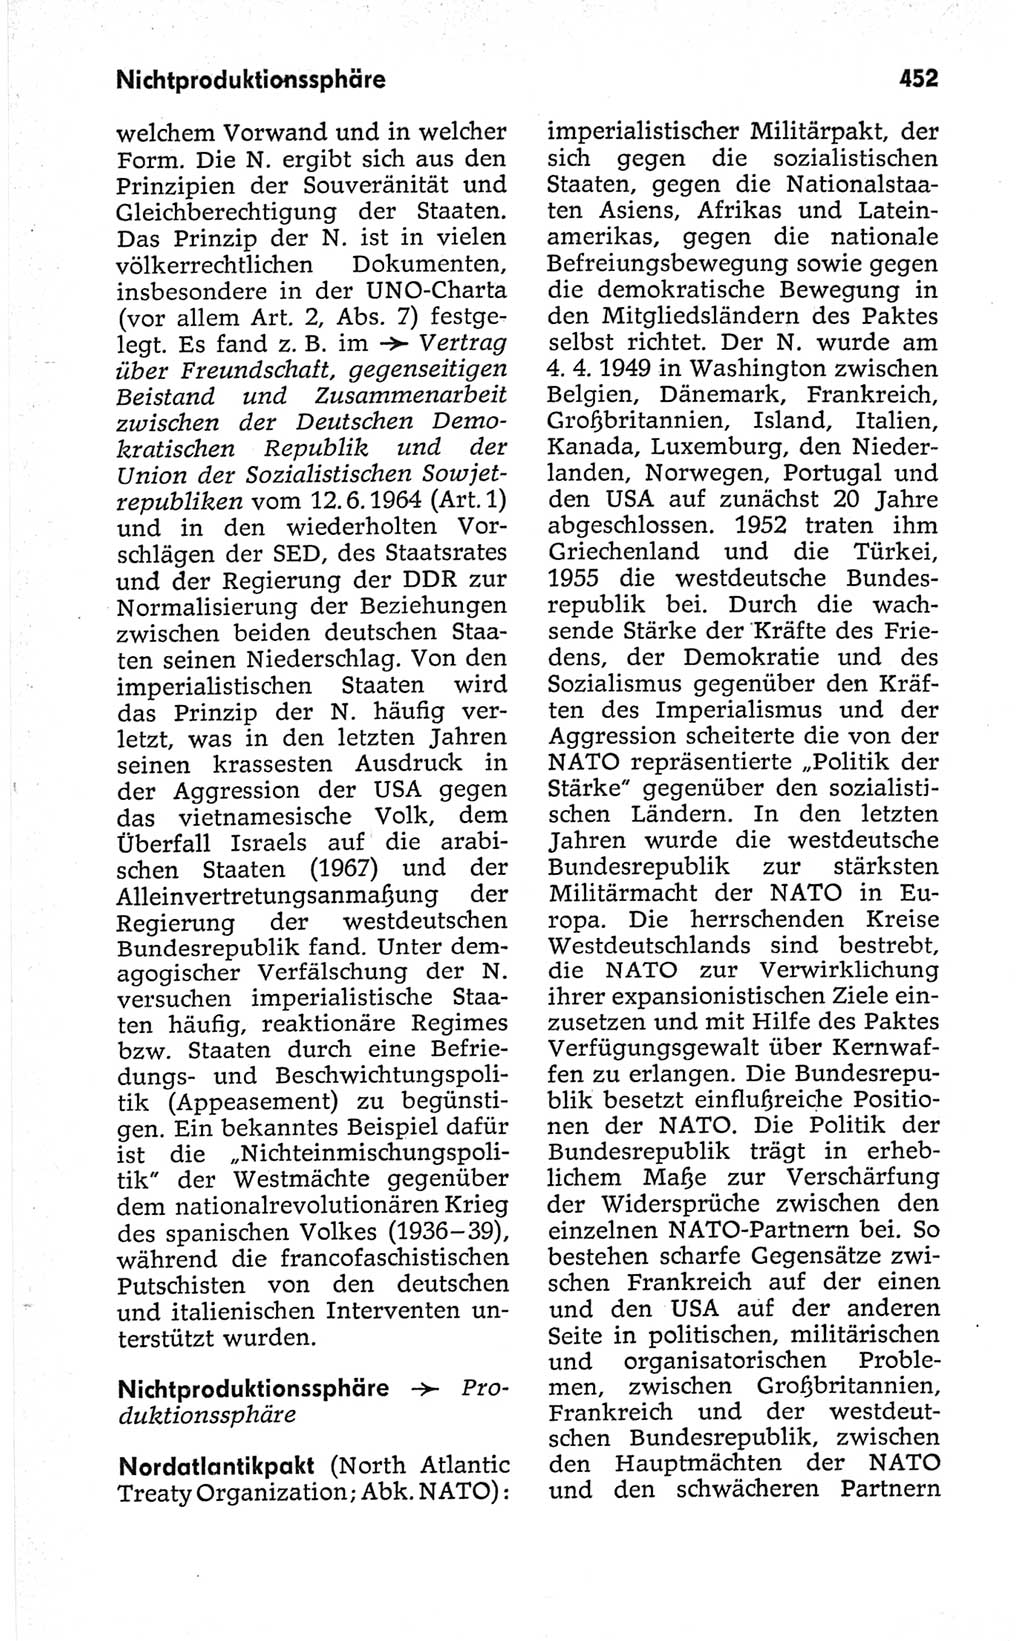 Kleines politisches Wörterbuch [Deutsche Demokratische Republik (DDR)] 1967, Seite 452 (Kl. pol. Wb. DDR 1967, S. 452)